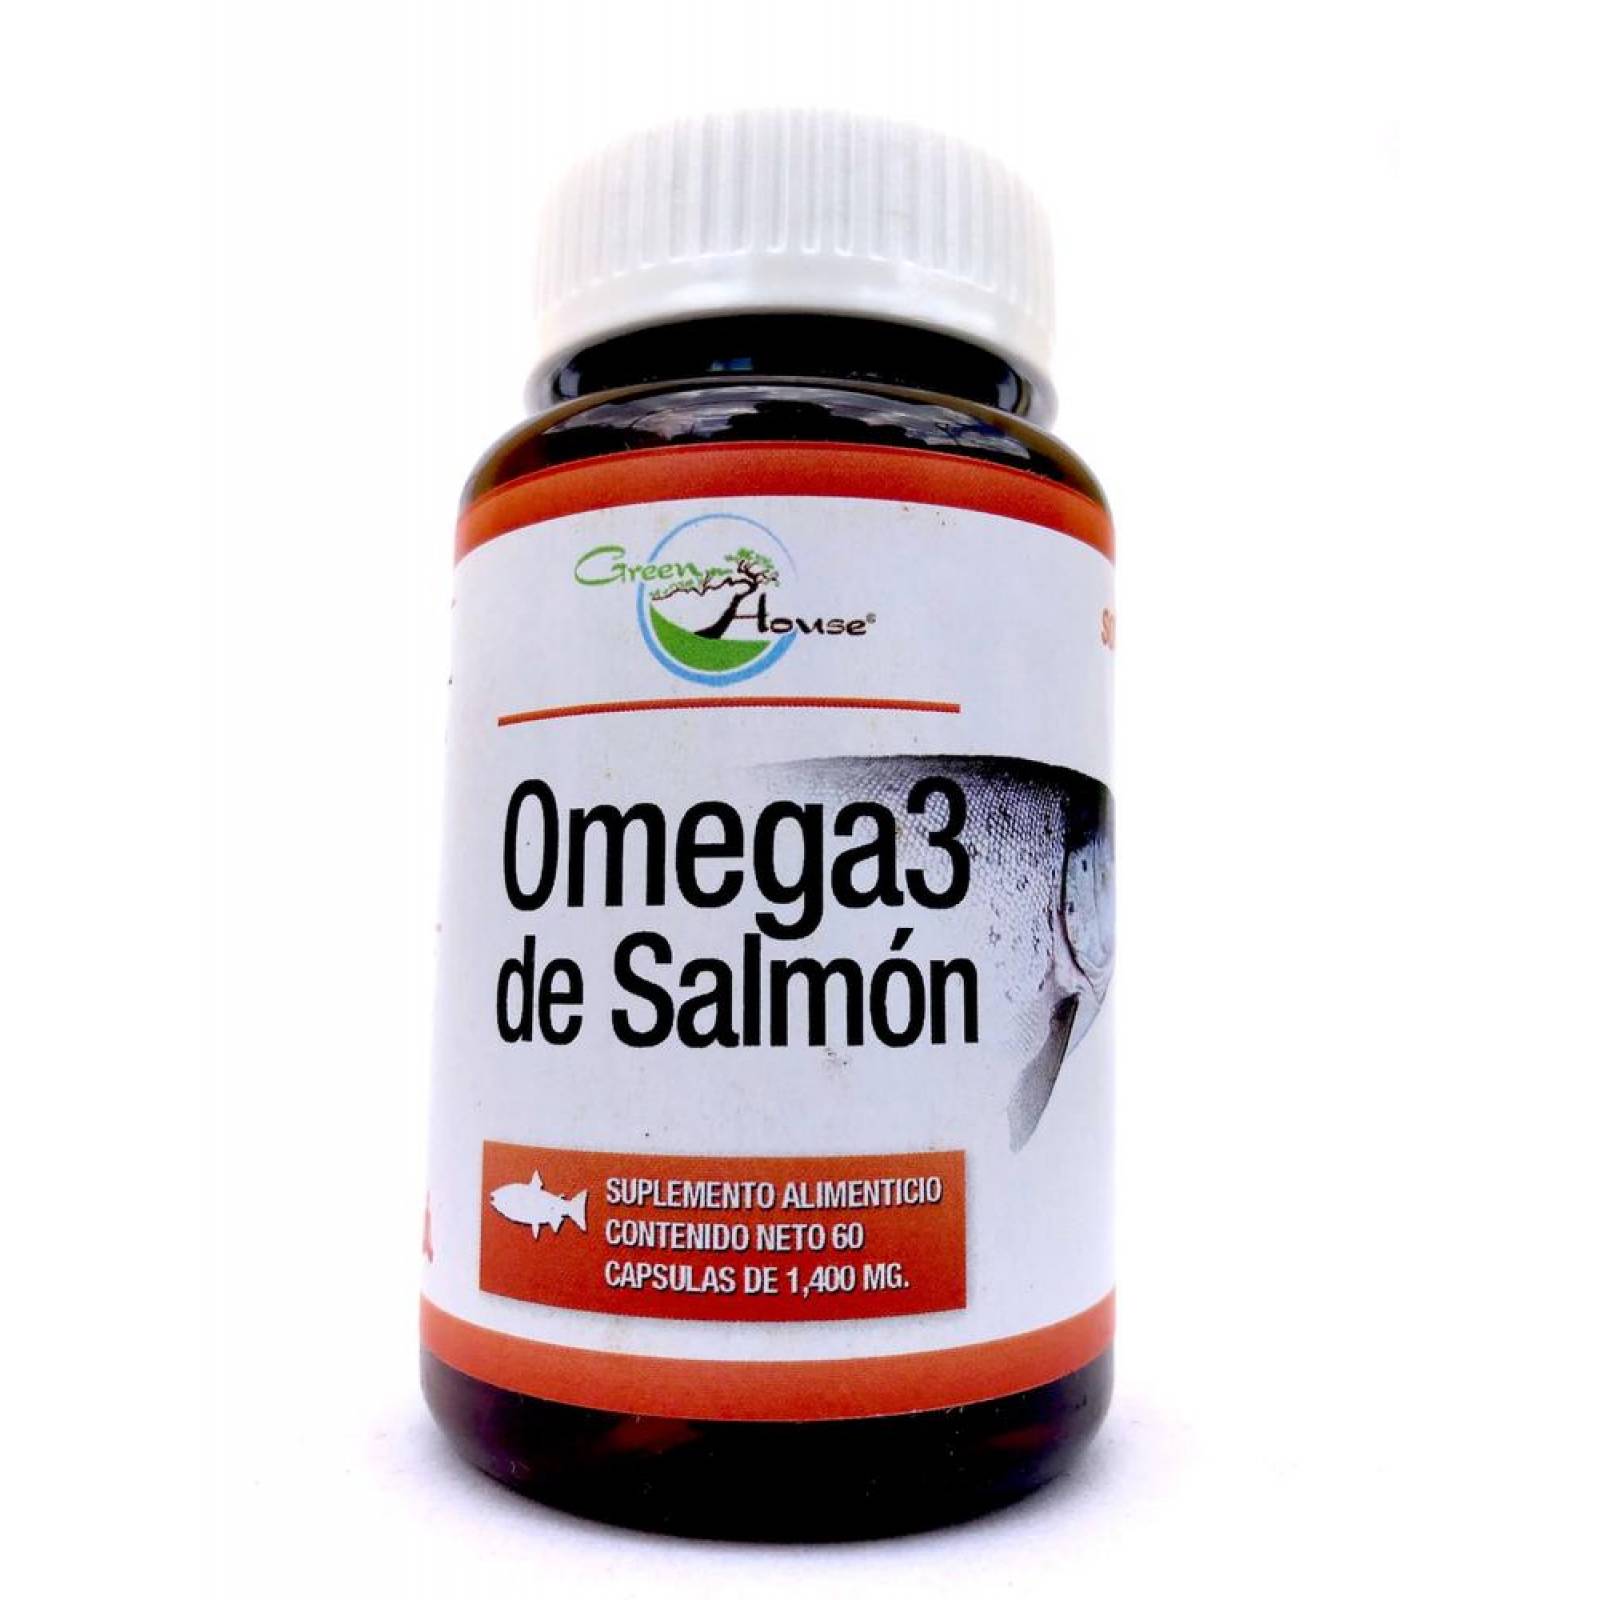 Omega 3 de Salmon 60 caps de 1400 mg Green House. 